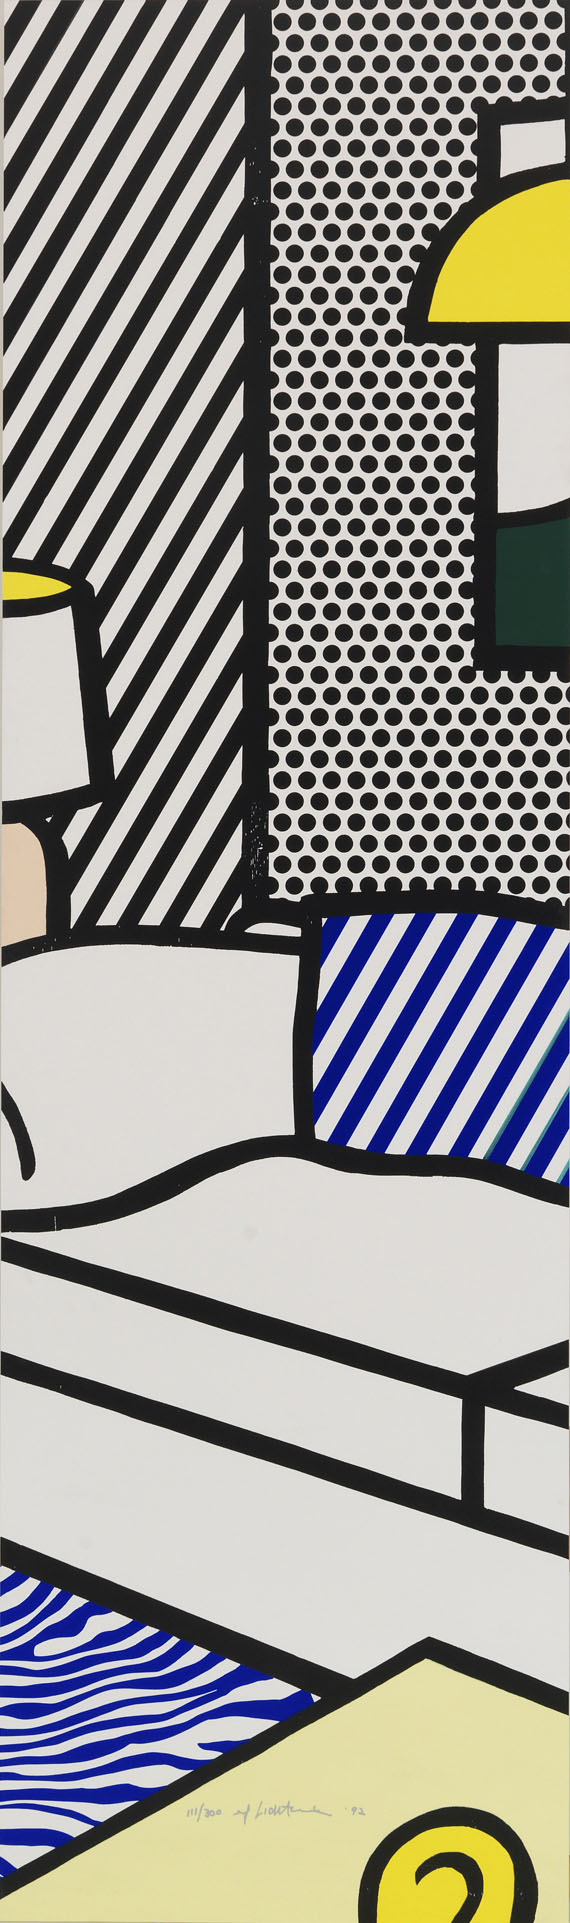 Roy Lichtenstein - Wallpaper with Blue Floor Interior